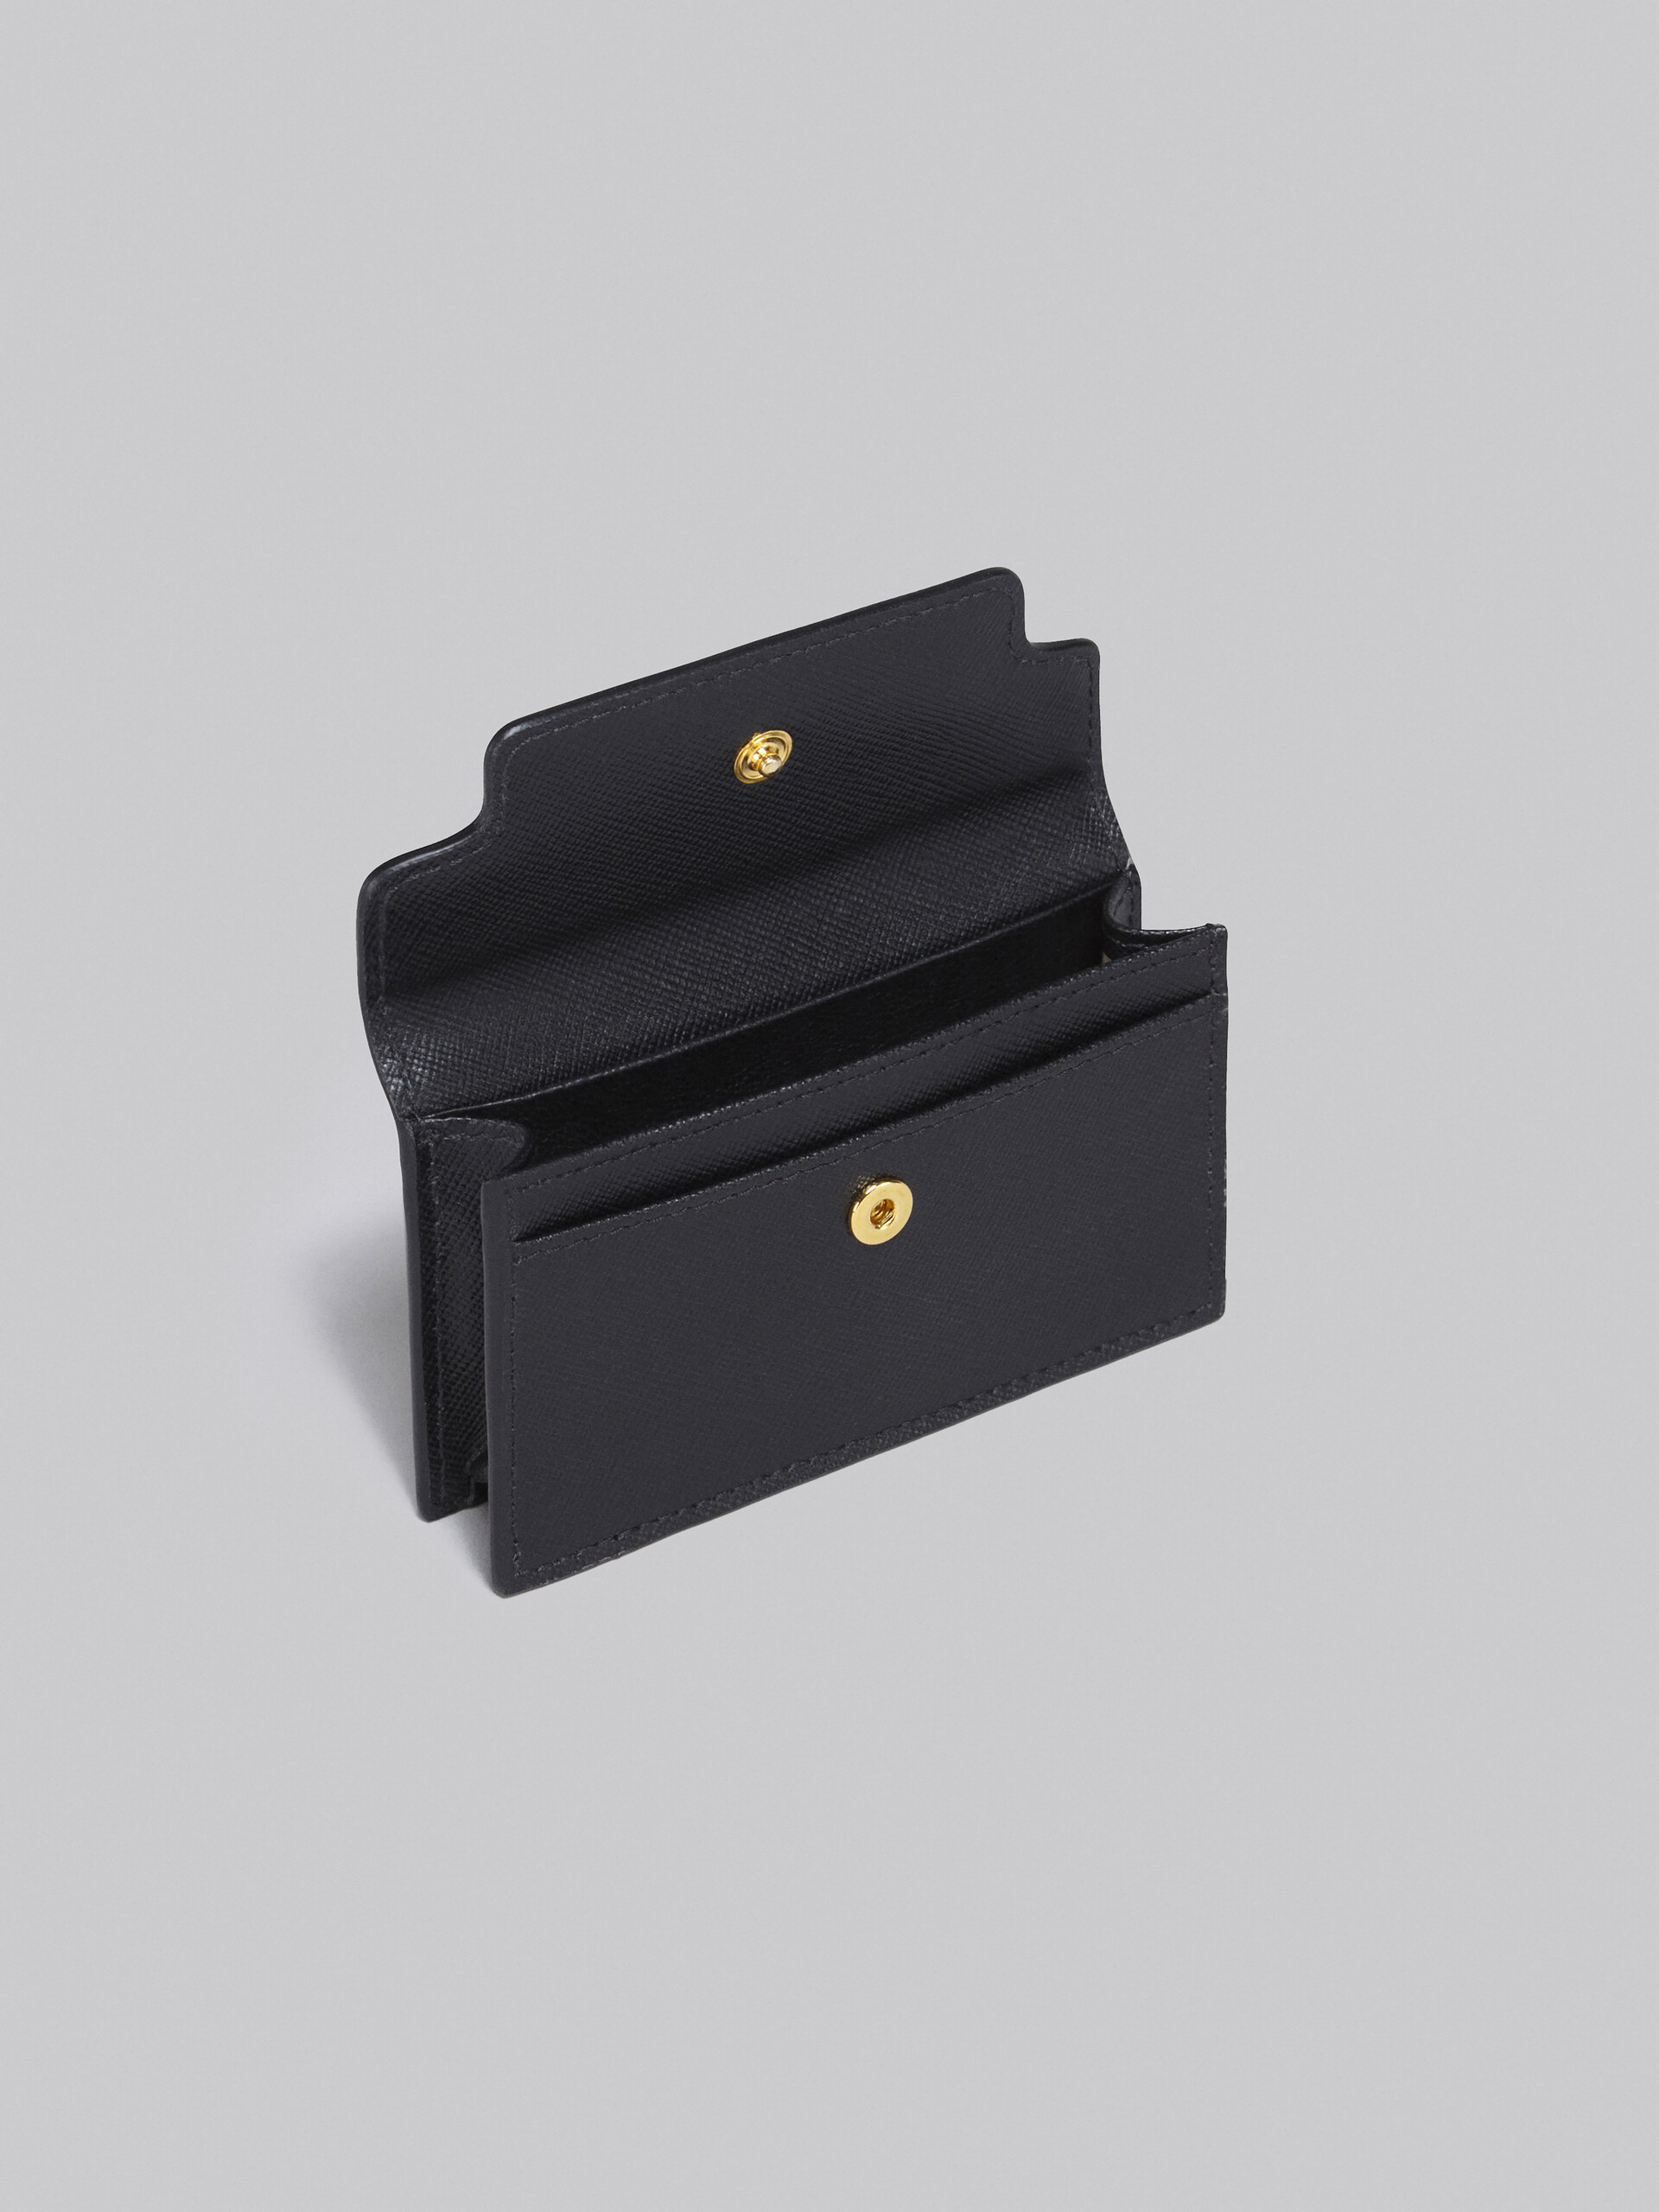 Porte-cartes de visite en cuir saffiano noir - Portefeuilles - Image 2